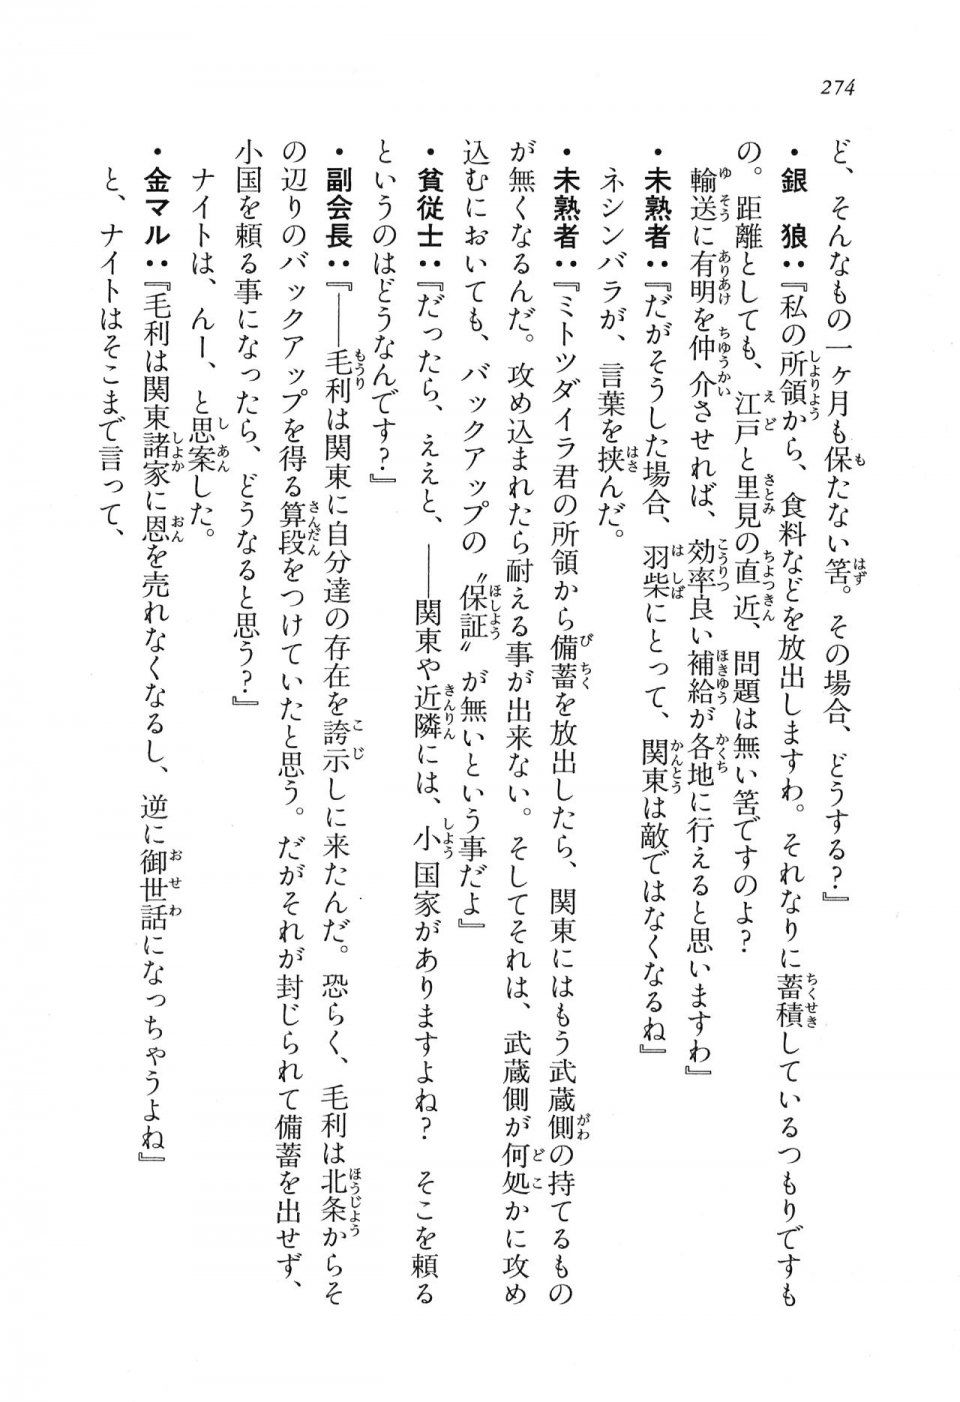 Kyoukai Senjou no Horizon LN Vol 16(7A) - Photo #274